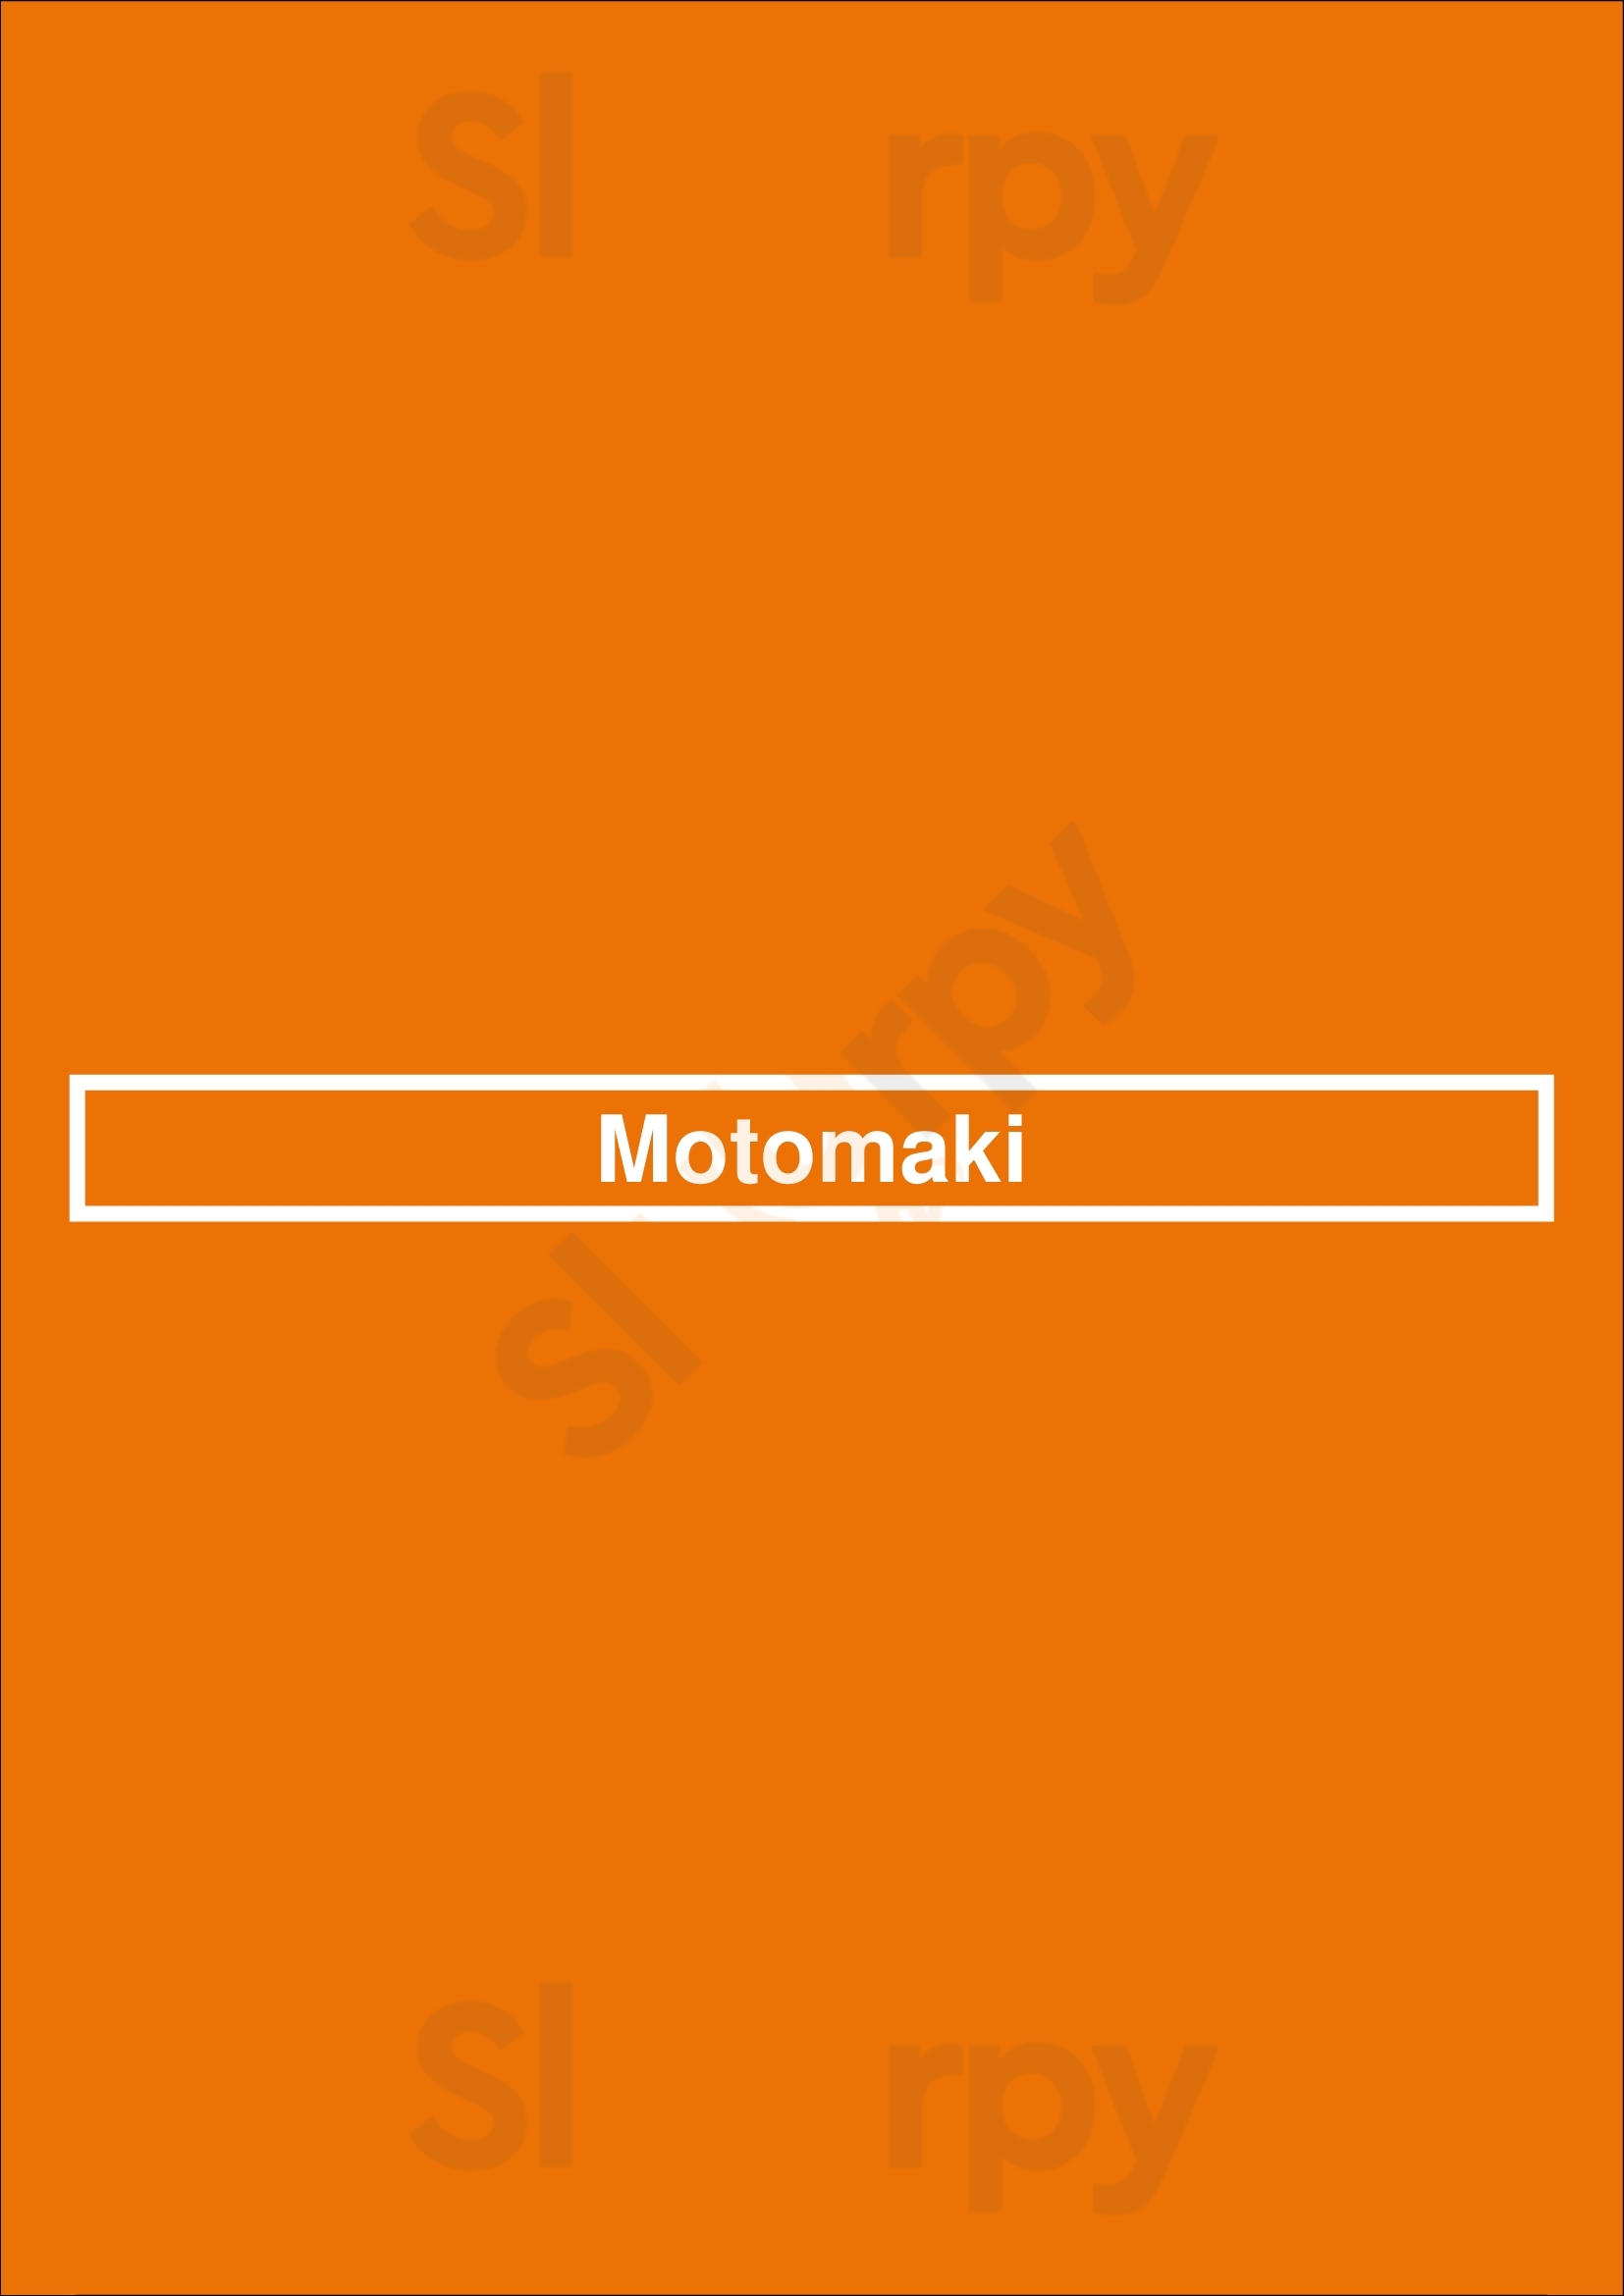 Motomaki Lakewood Menu - 1